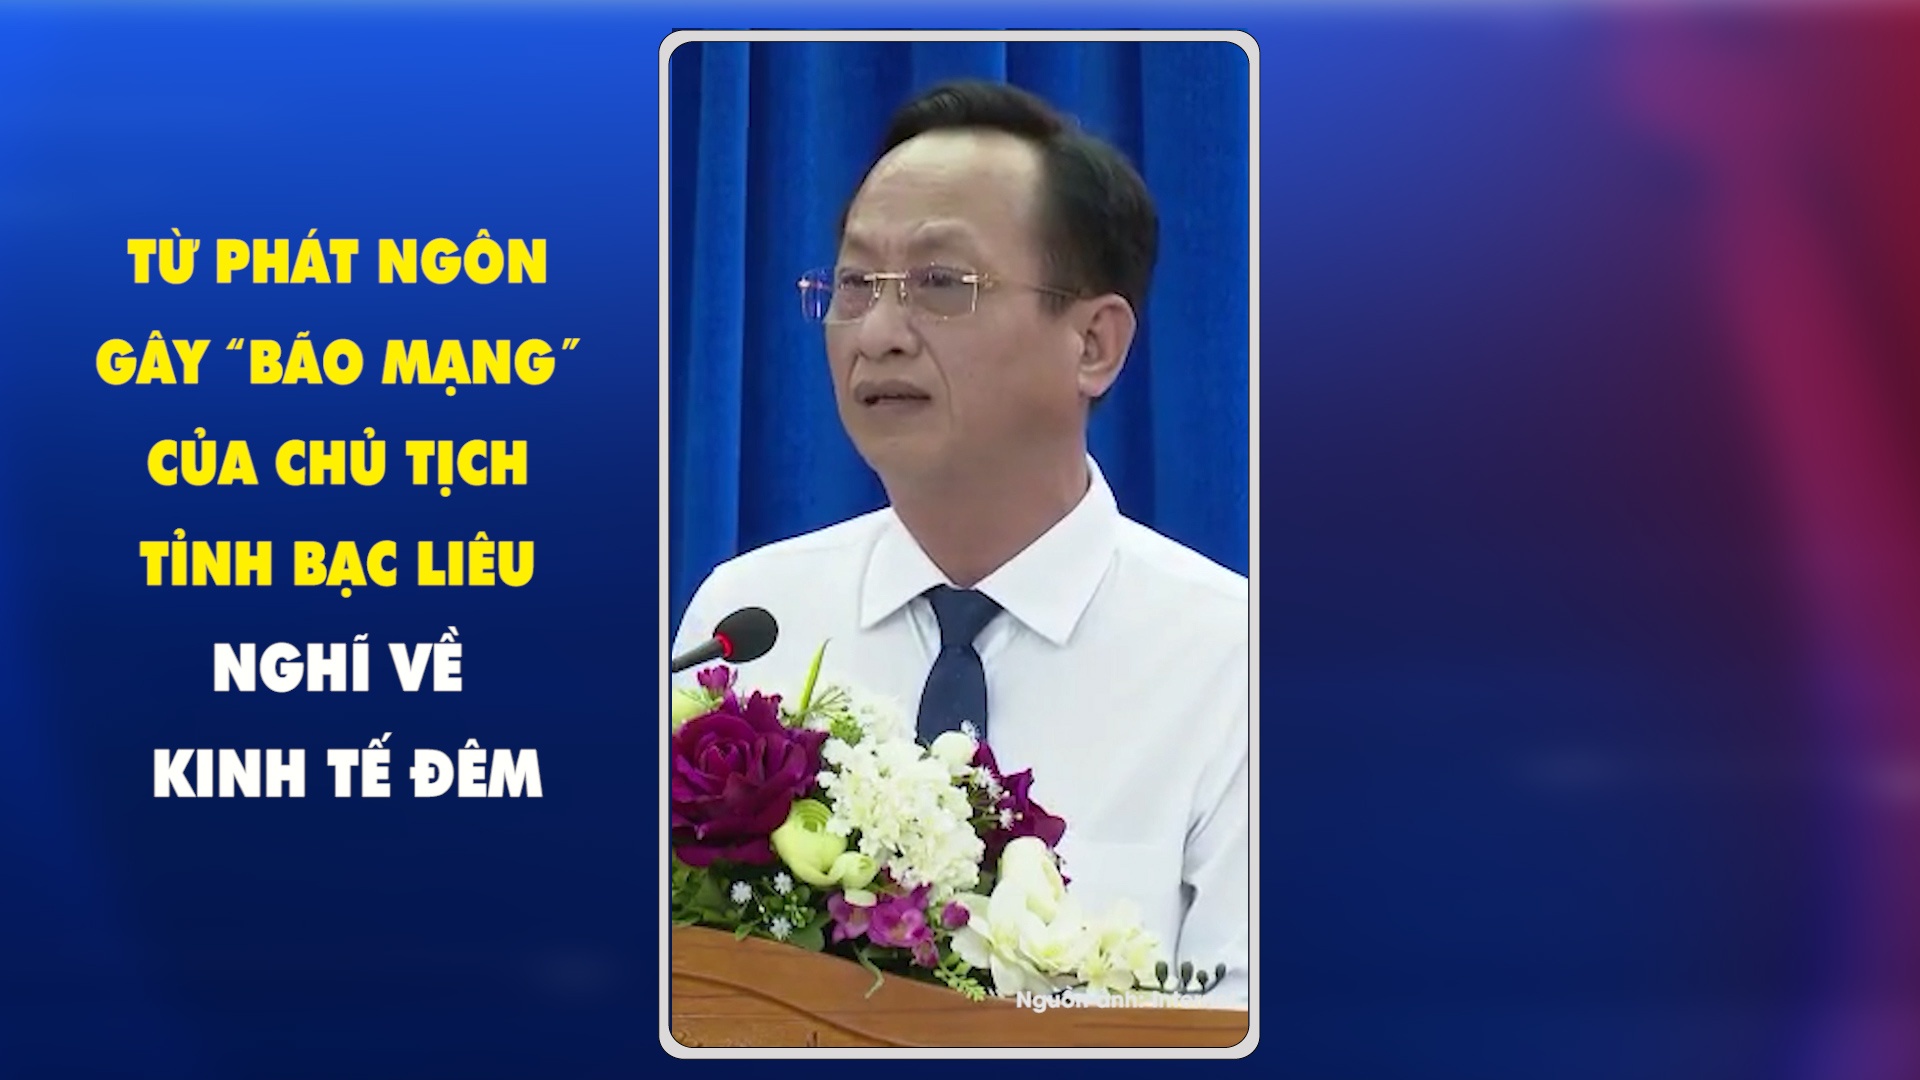 Từ phát ngôn gây “bão mạng” của Chủ tịch tỉnh Bạc Liêu nghĩ về kinh tế đêm